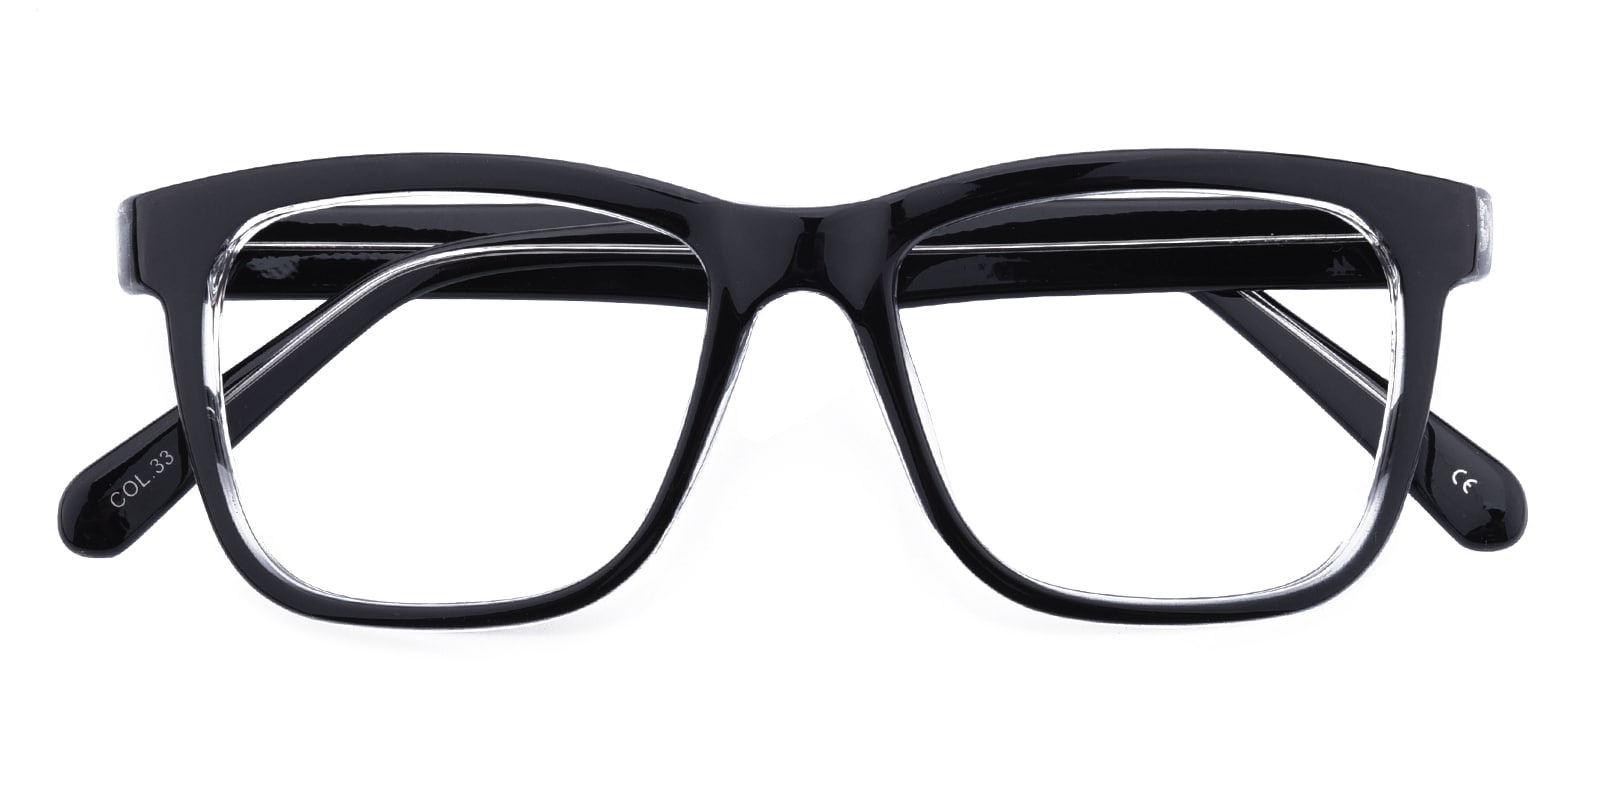 Square Eyeglasses, Full Frame Black/Crystal Plastic - FP1735